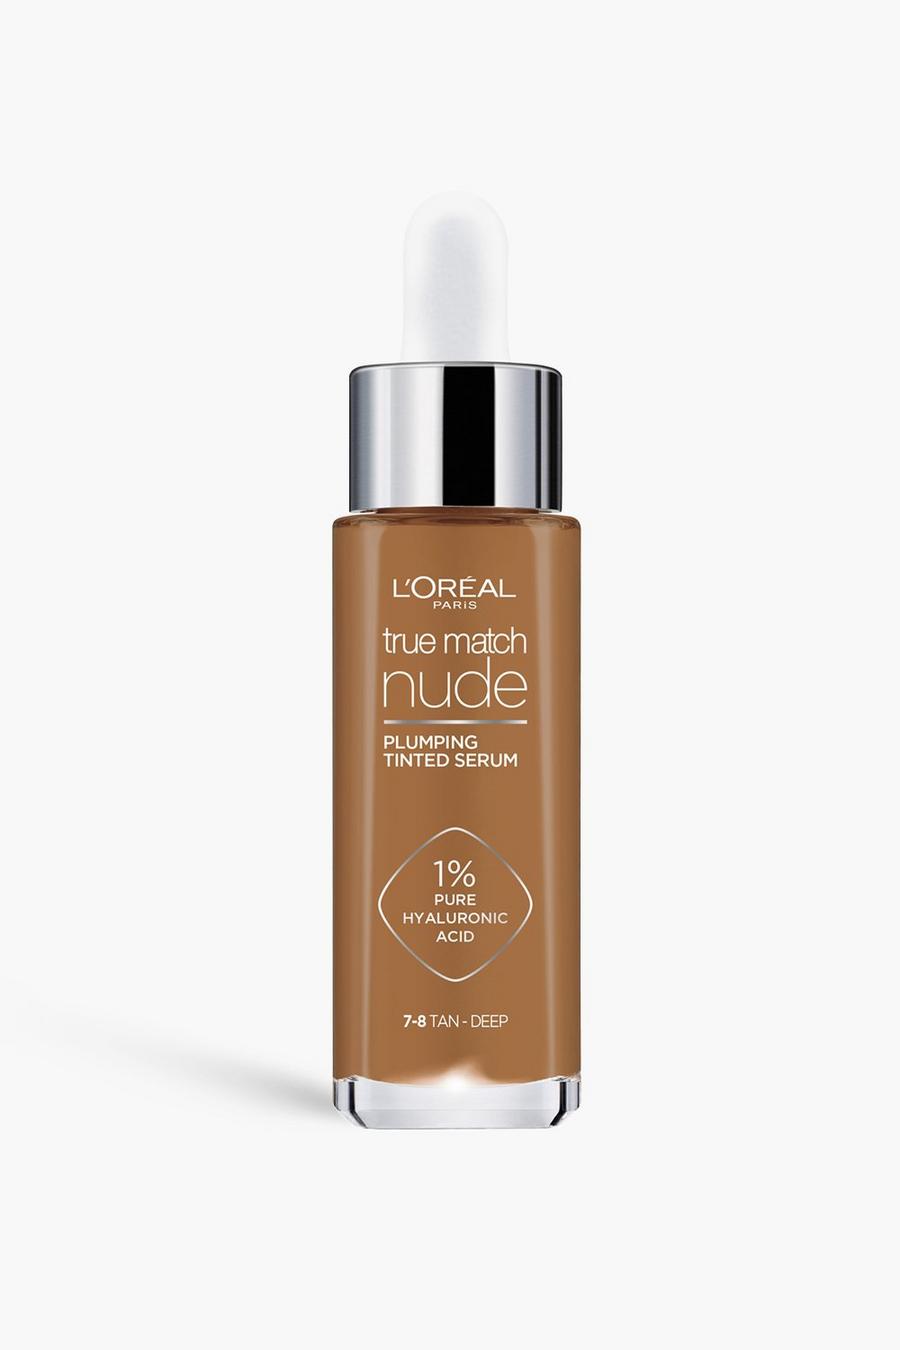 L'Oréal Paris - Crème teintée pour le visage - 8-10, 7-8 tan deep